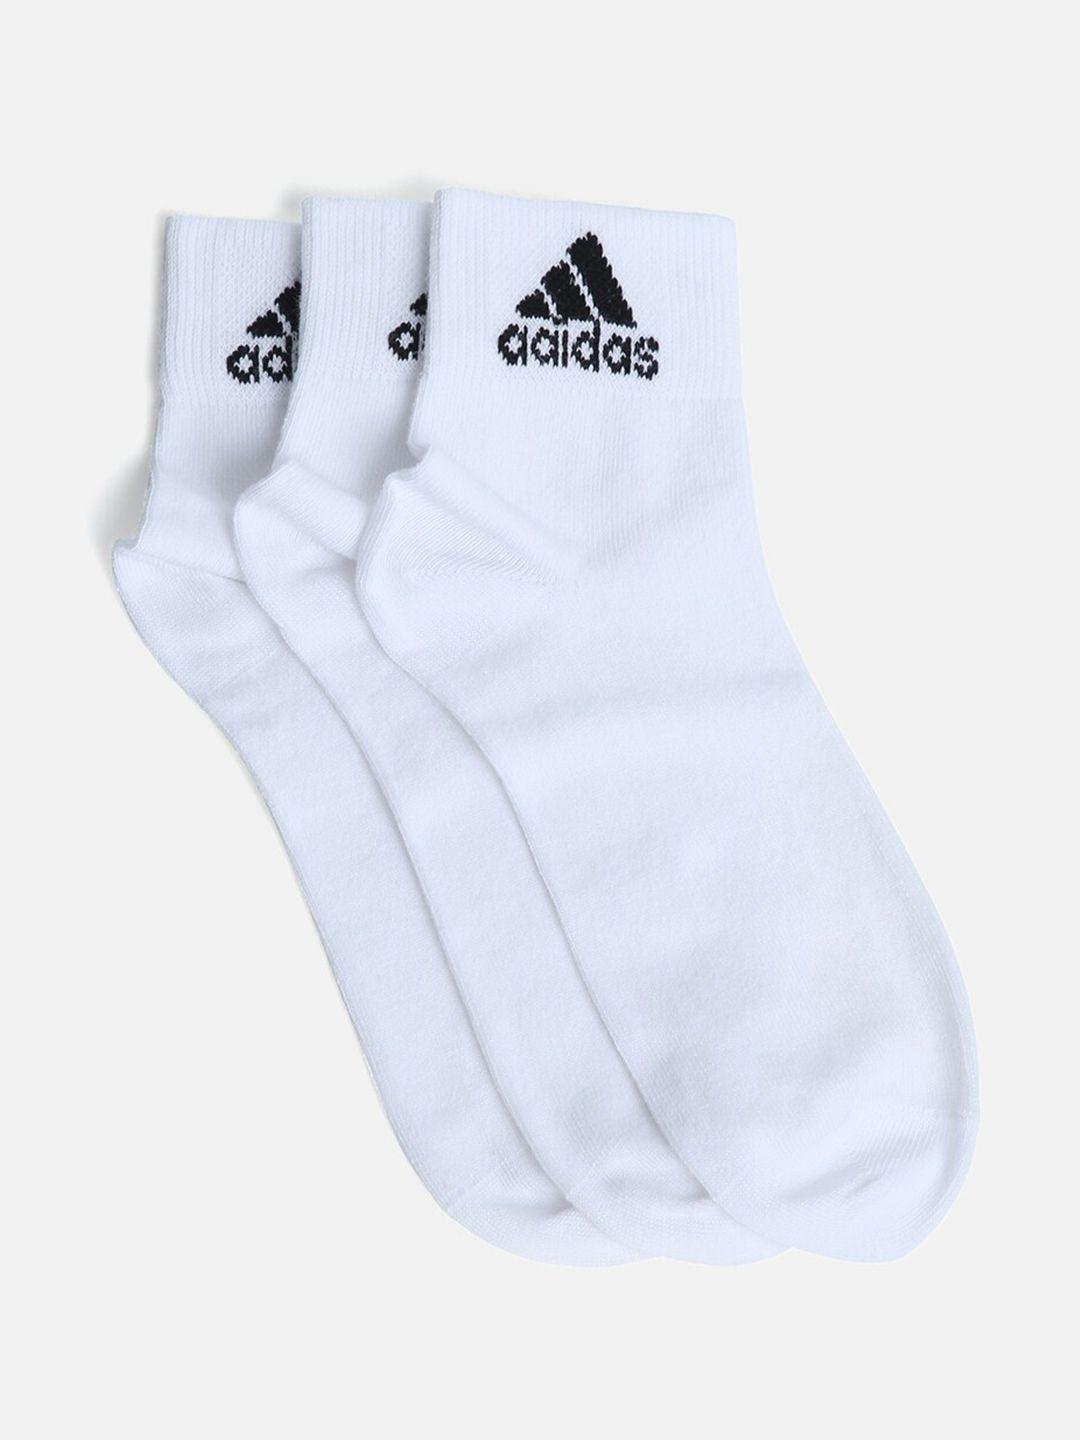 adidas-men-pack-of-3-white-ankle-length-socks